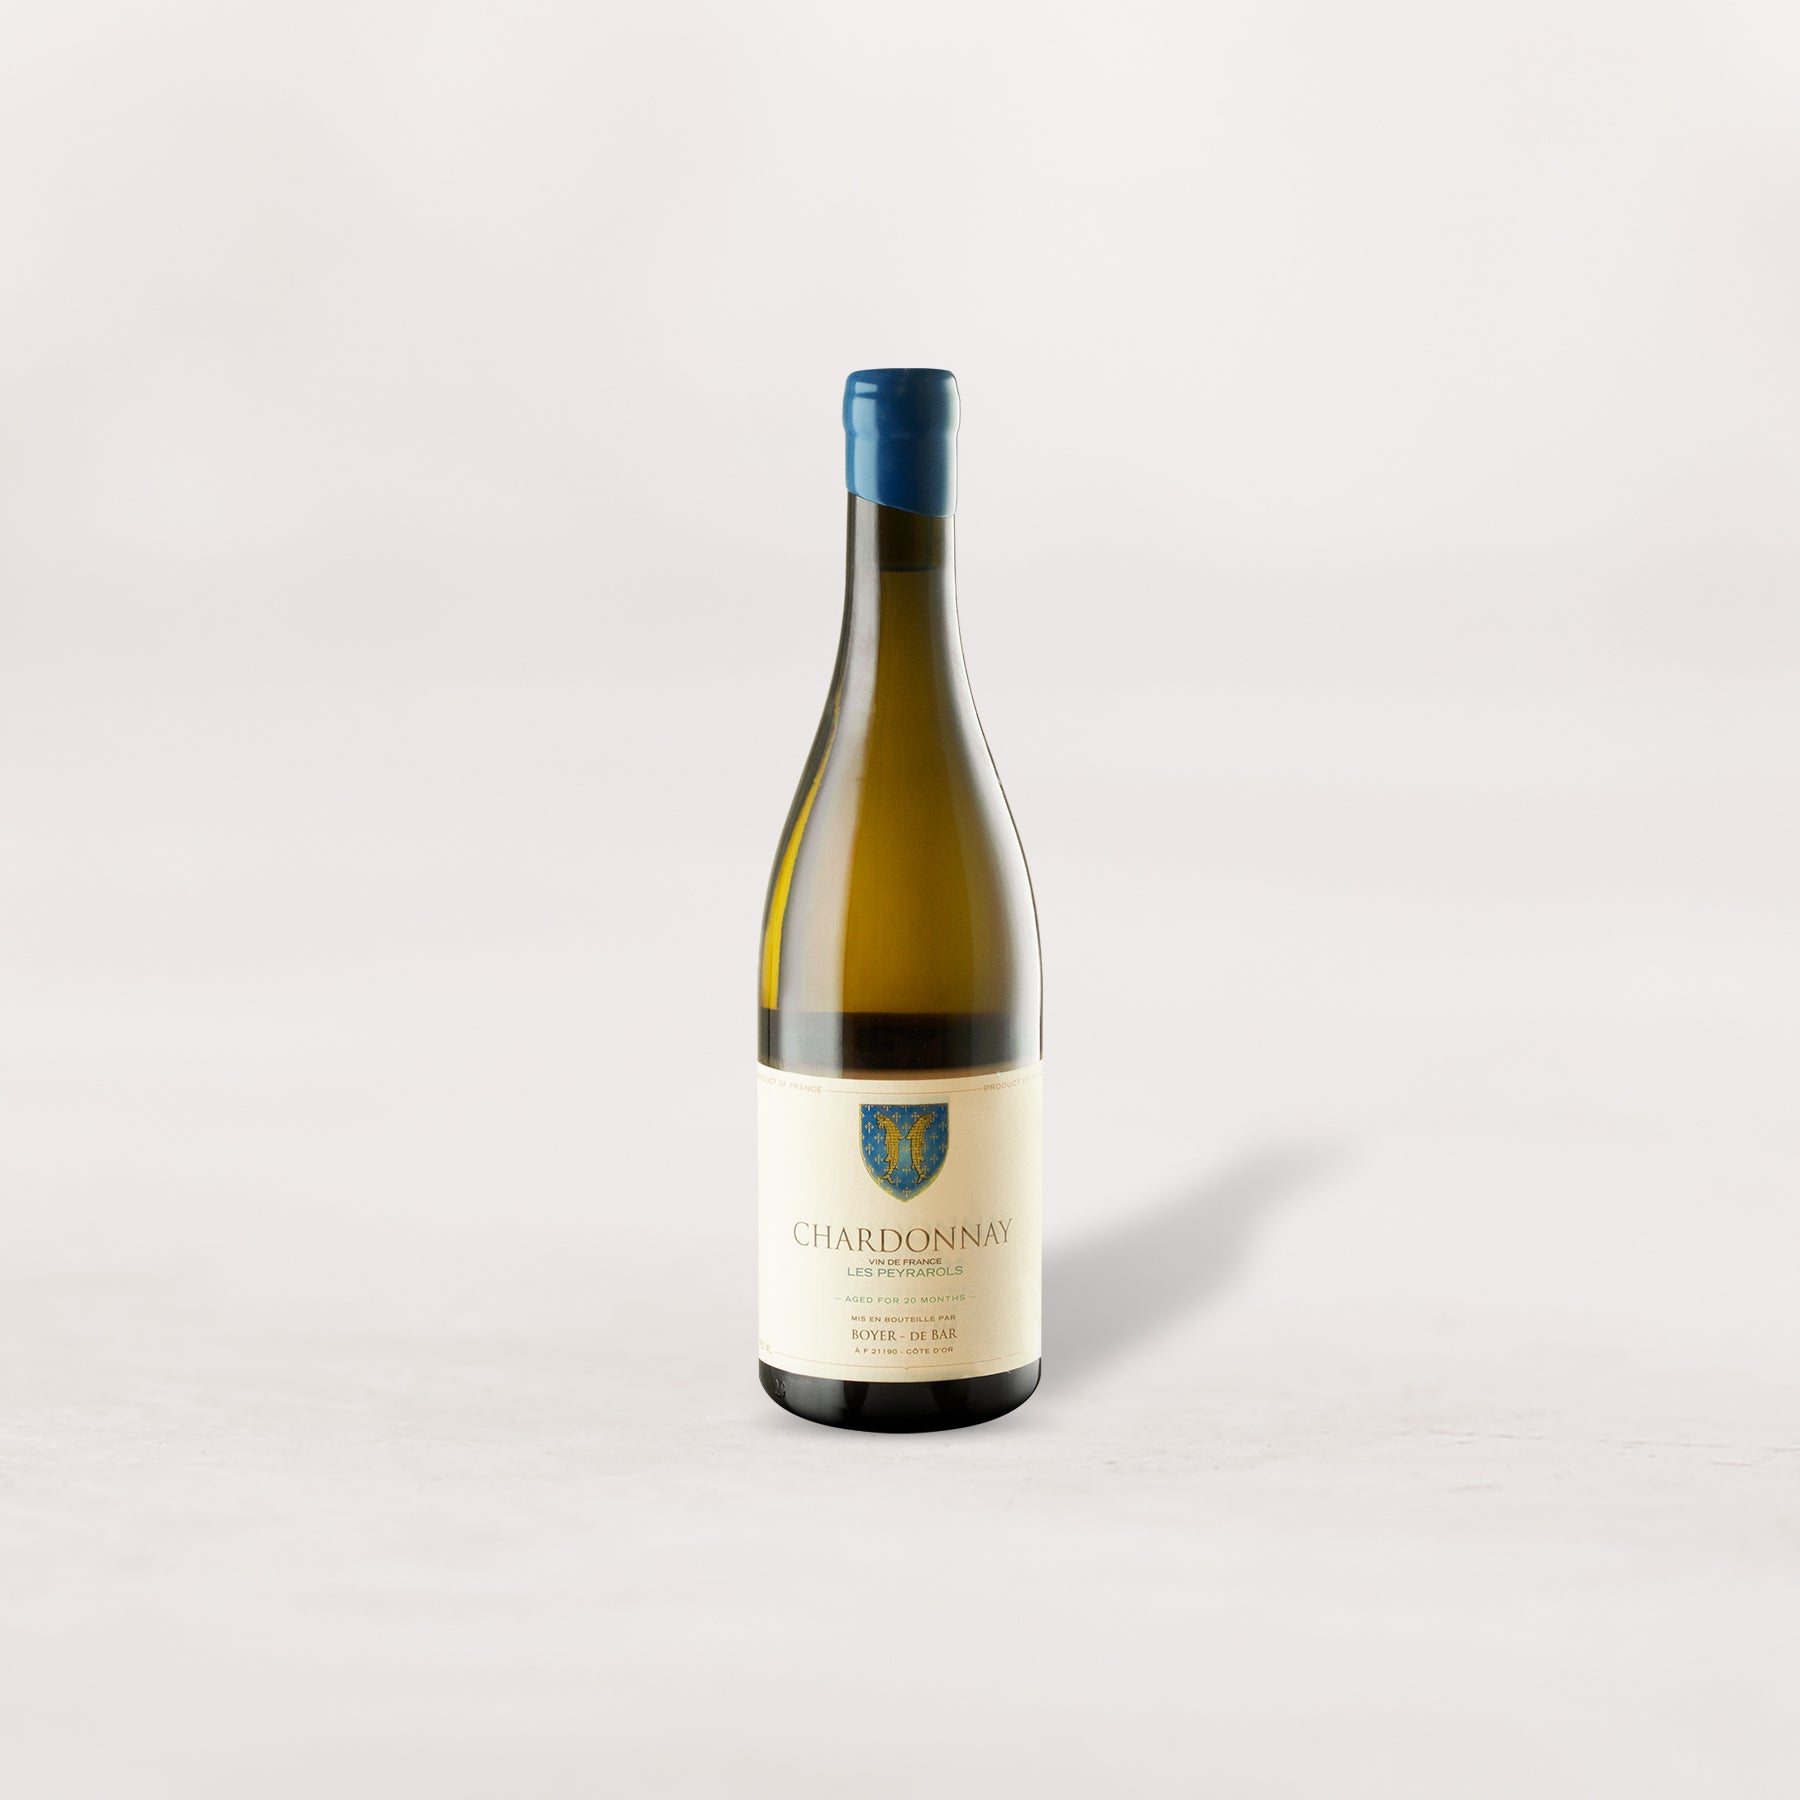 2021 Boyer-de Bar, VDF Chardonnay "Les Peyrarols"